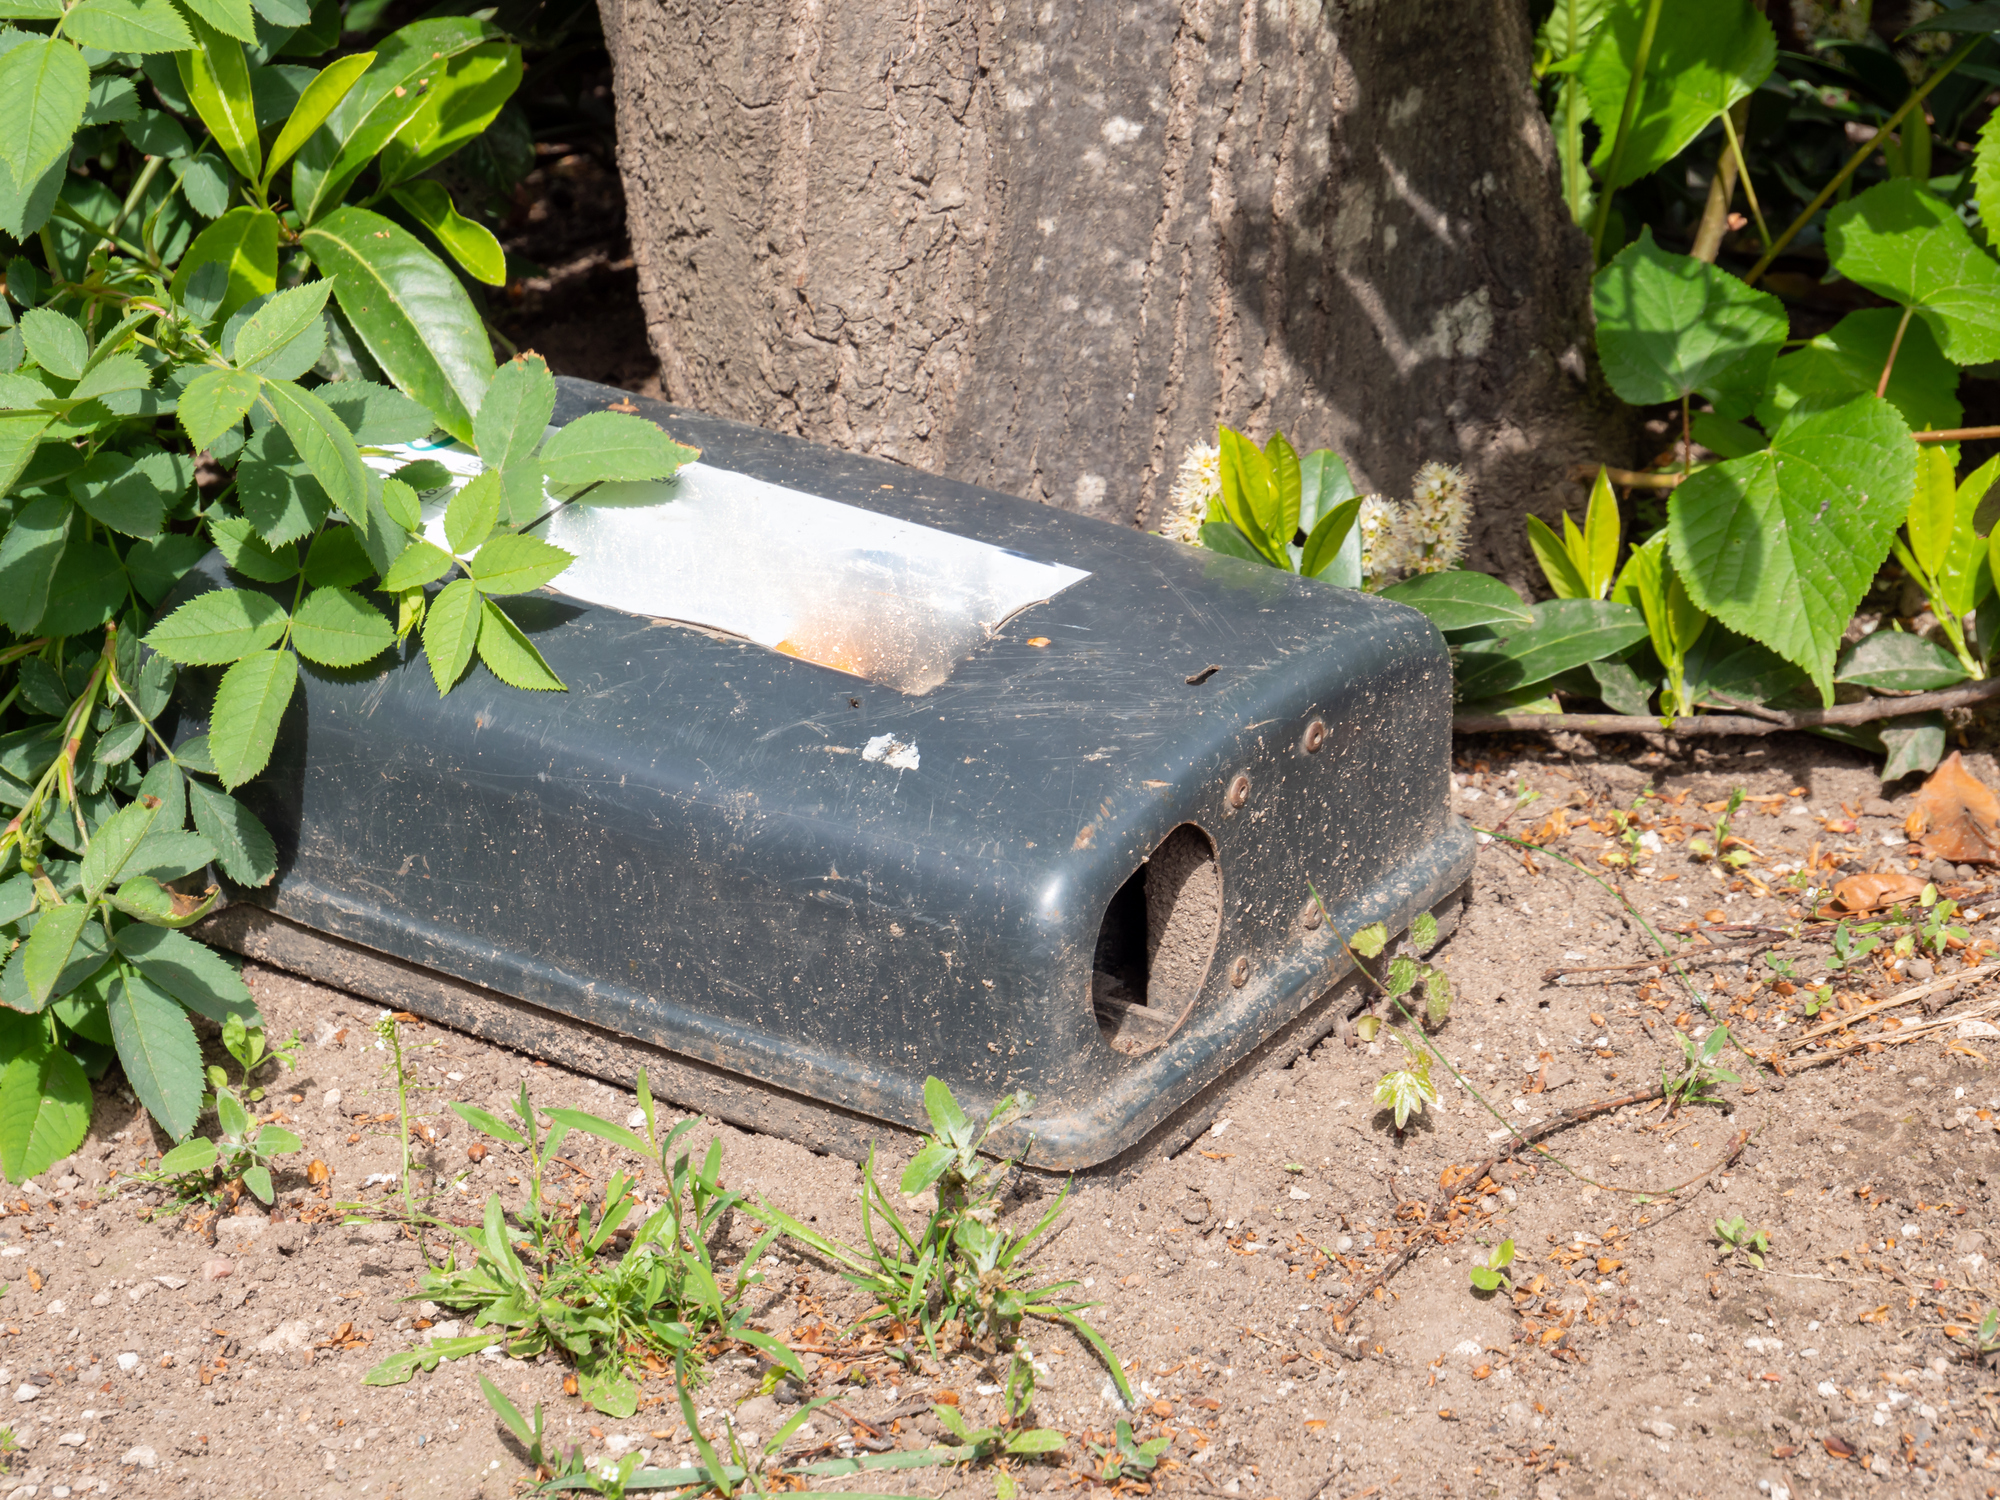  Giftköder: Box mit Rattengift am Baum aufgestellt